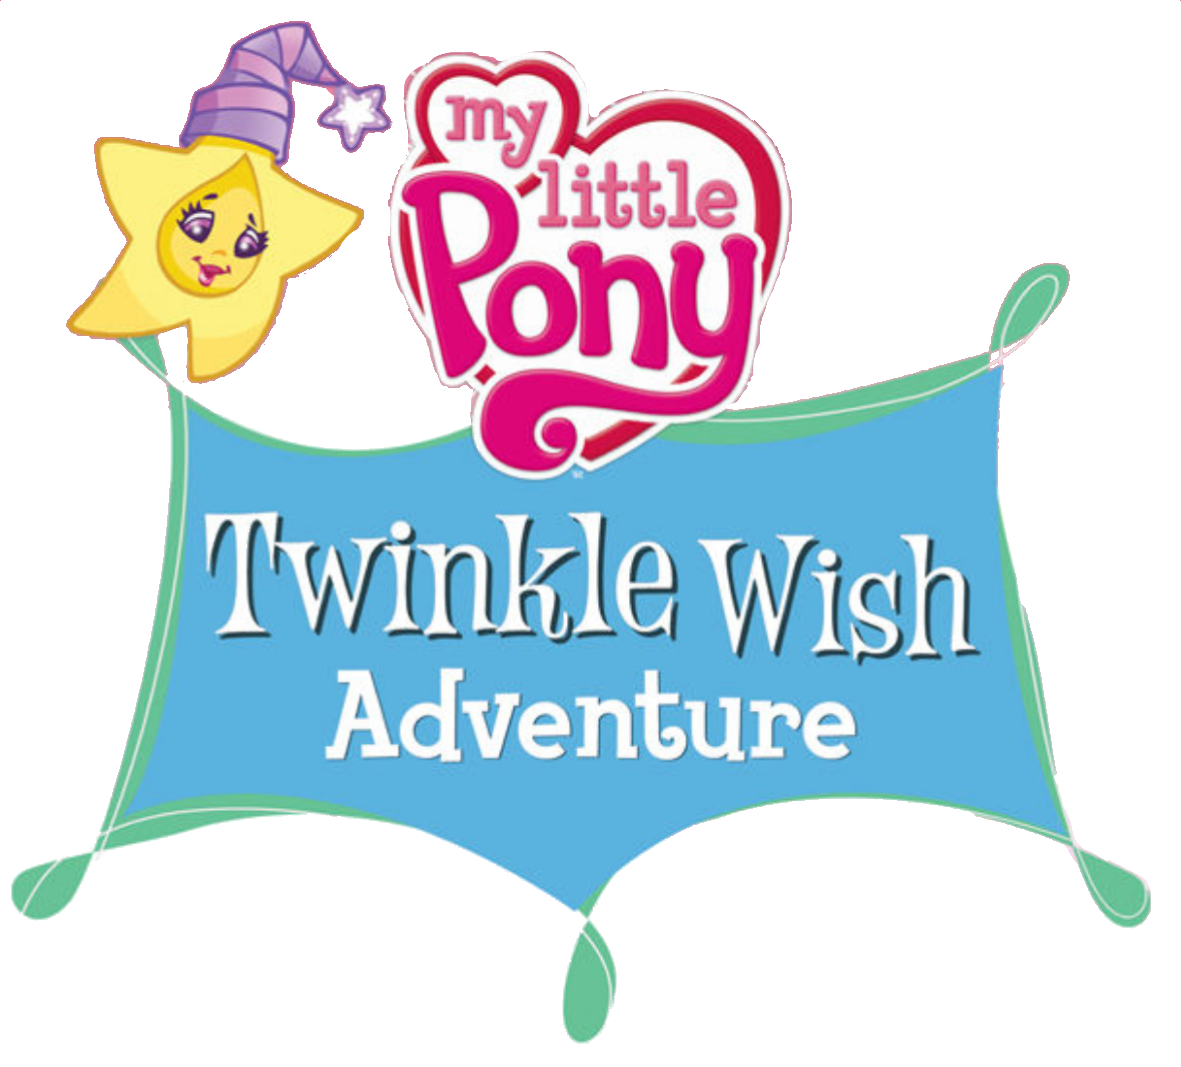 File:My Little Pony G4 logo.svg - Wikipedia